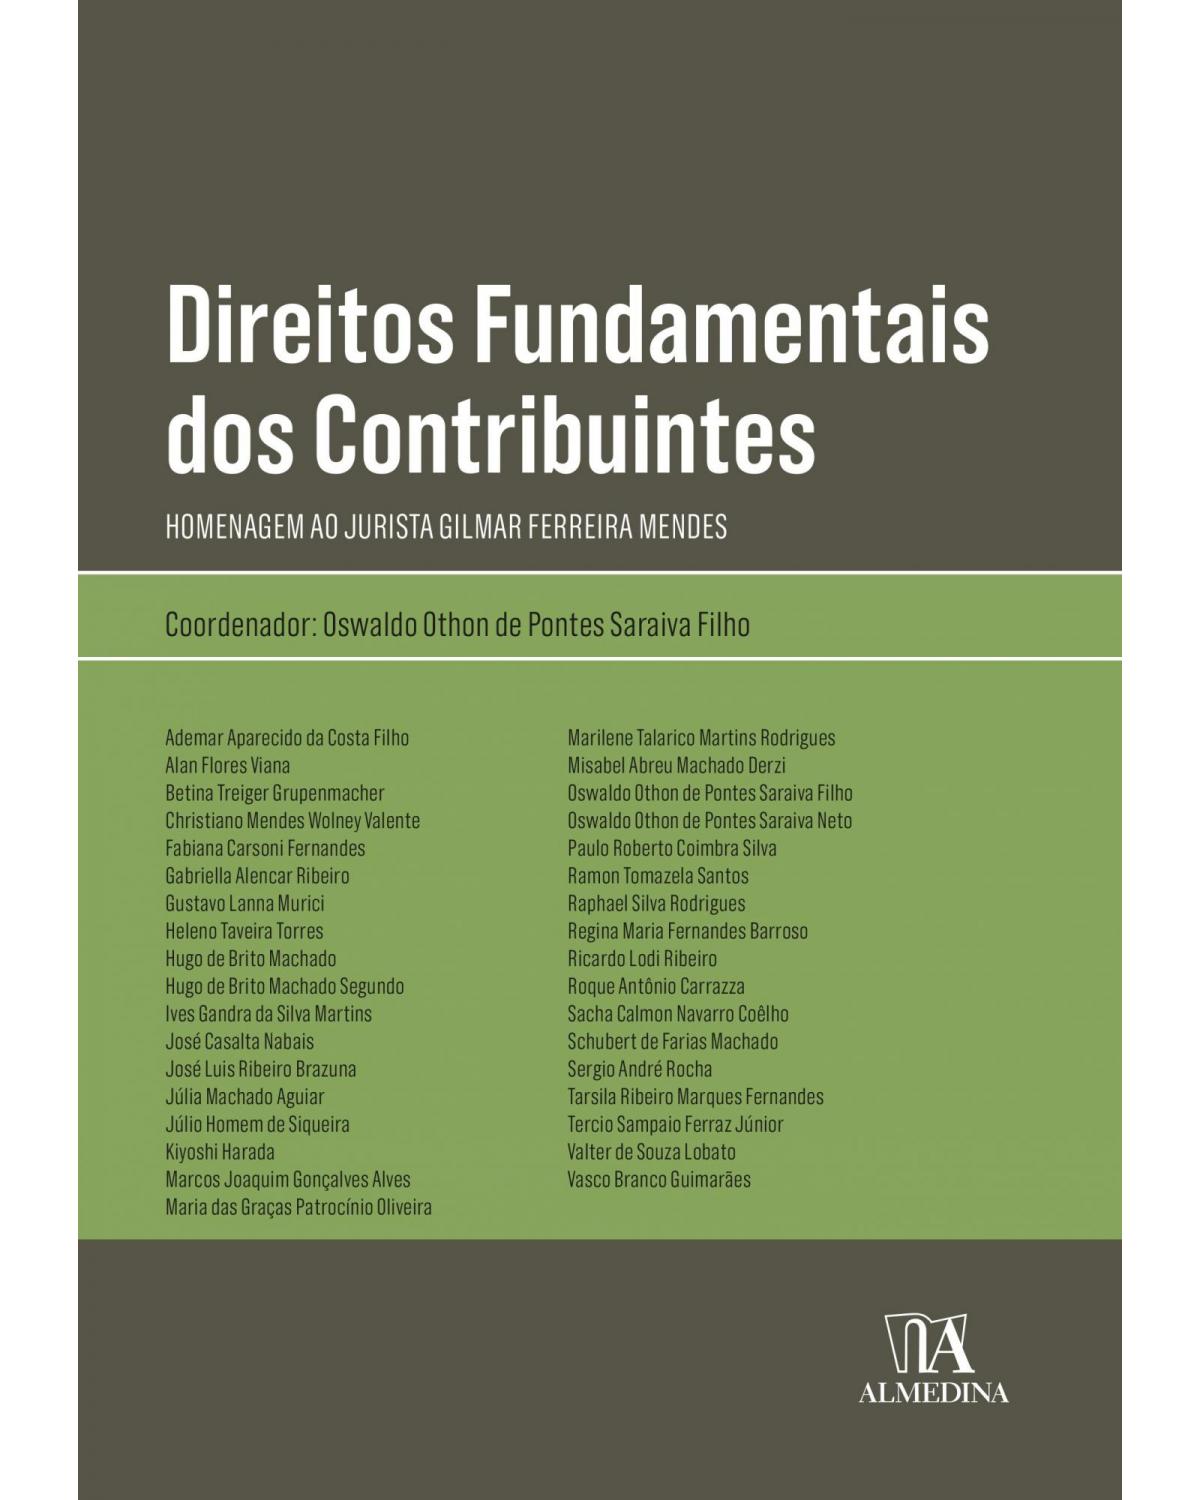 Direitos fundamentais dos contribuintes - homenagem ao jurista Gilmar Ferreira Mendes - 1ª Edição | 2021